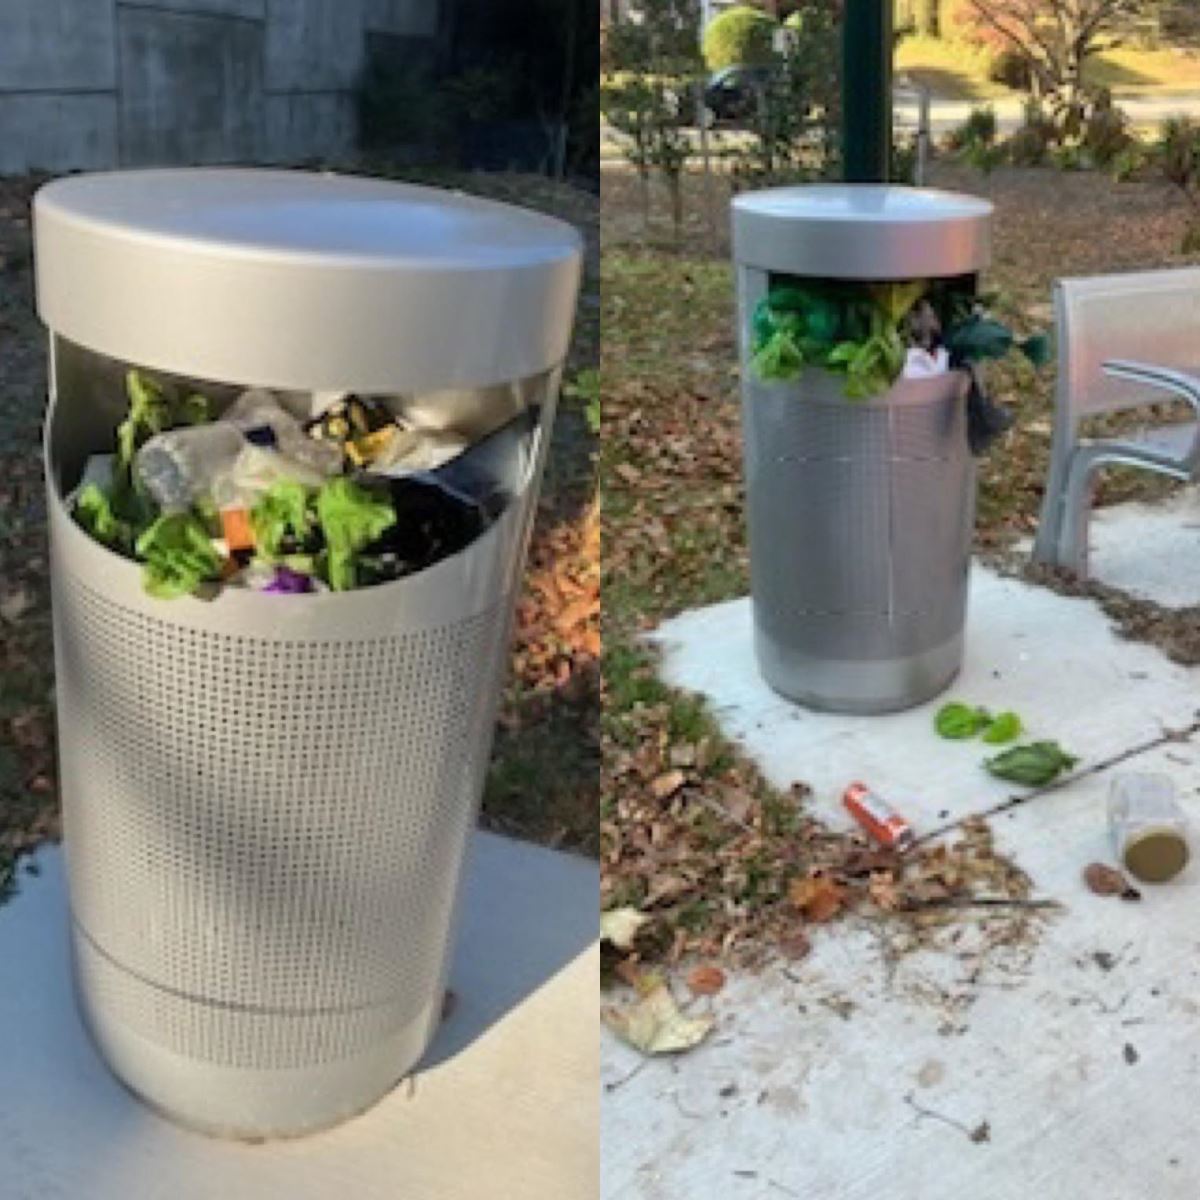 Imágenes del recipiente de basura lleno en Chevy Chase.